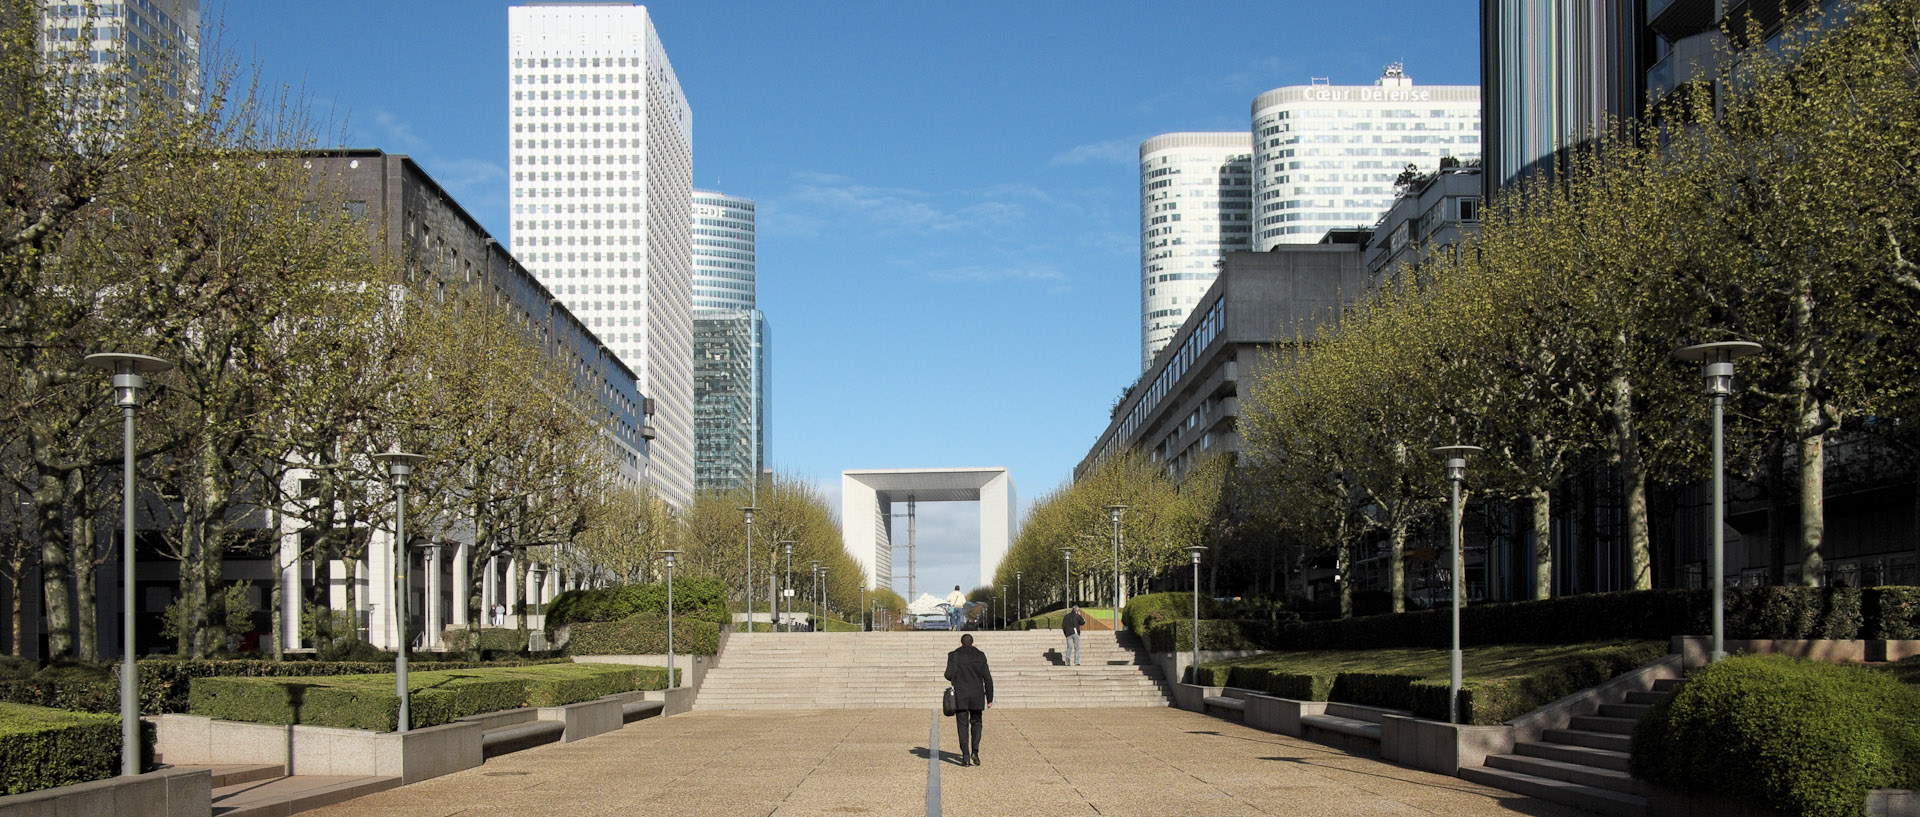 Passants, esplanade de La Défense, à Paris.